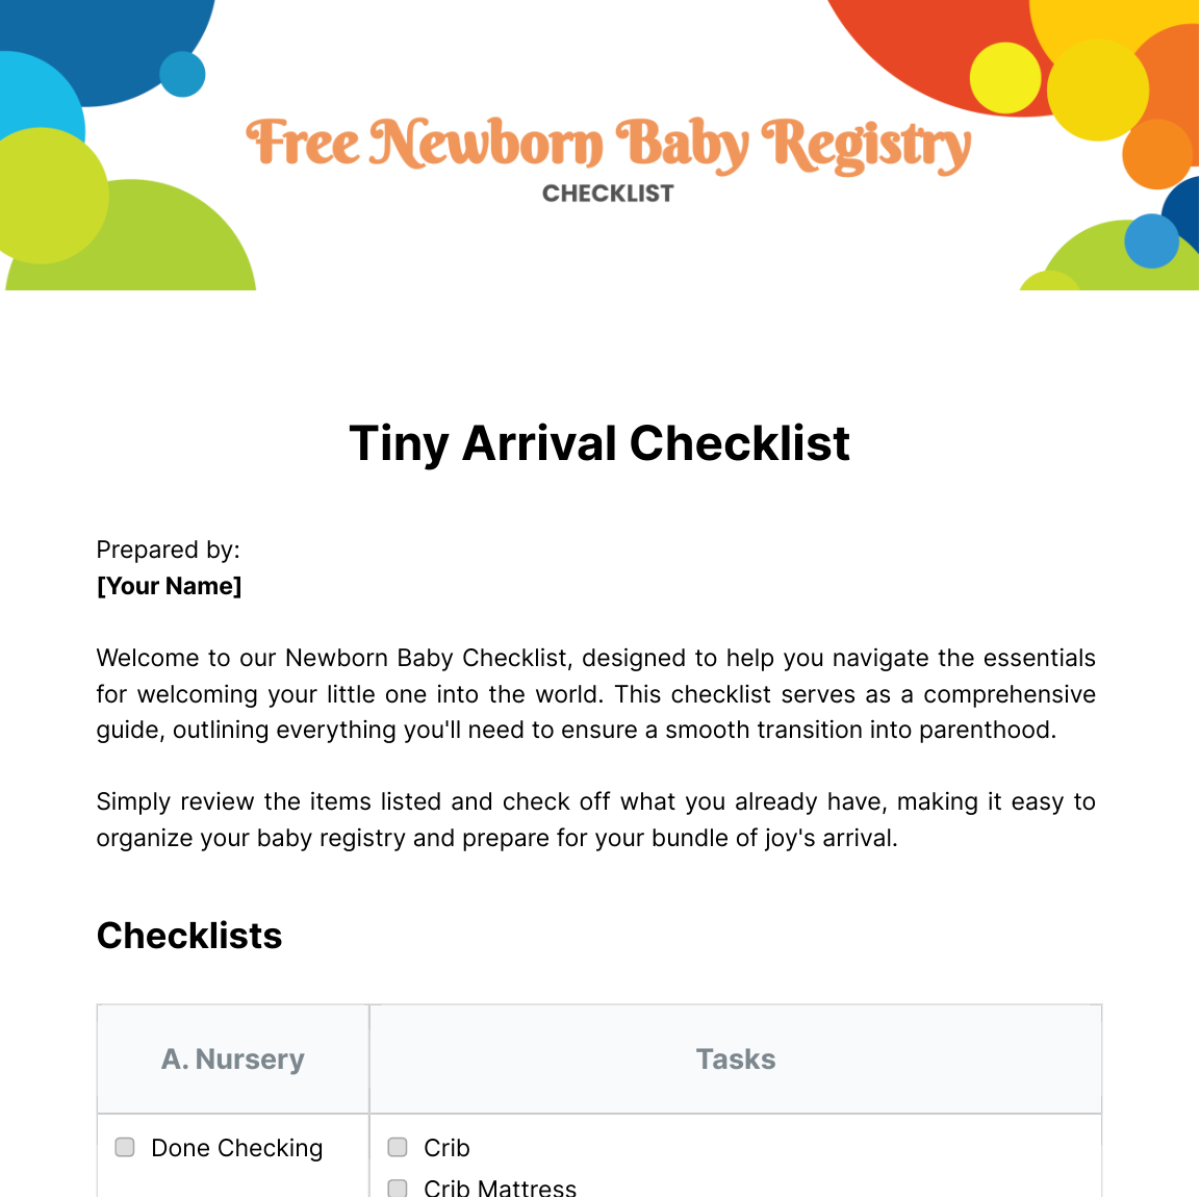 Free Newborn Baby Registry Checklist Template